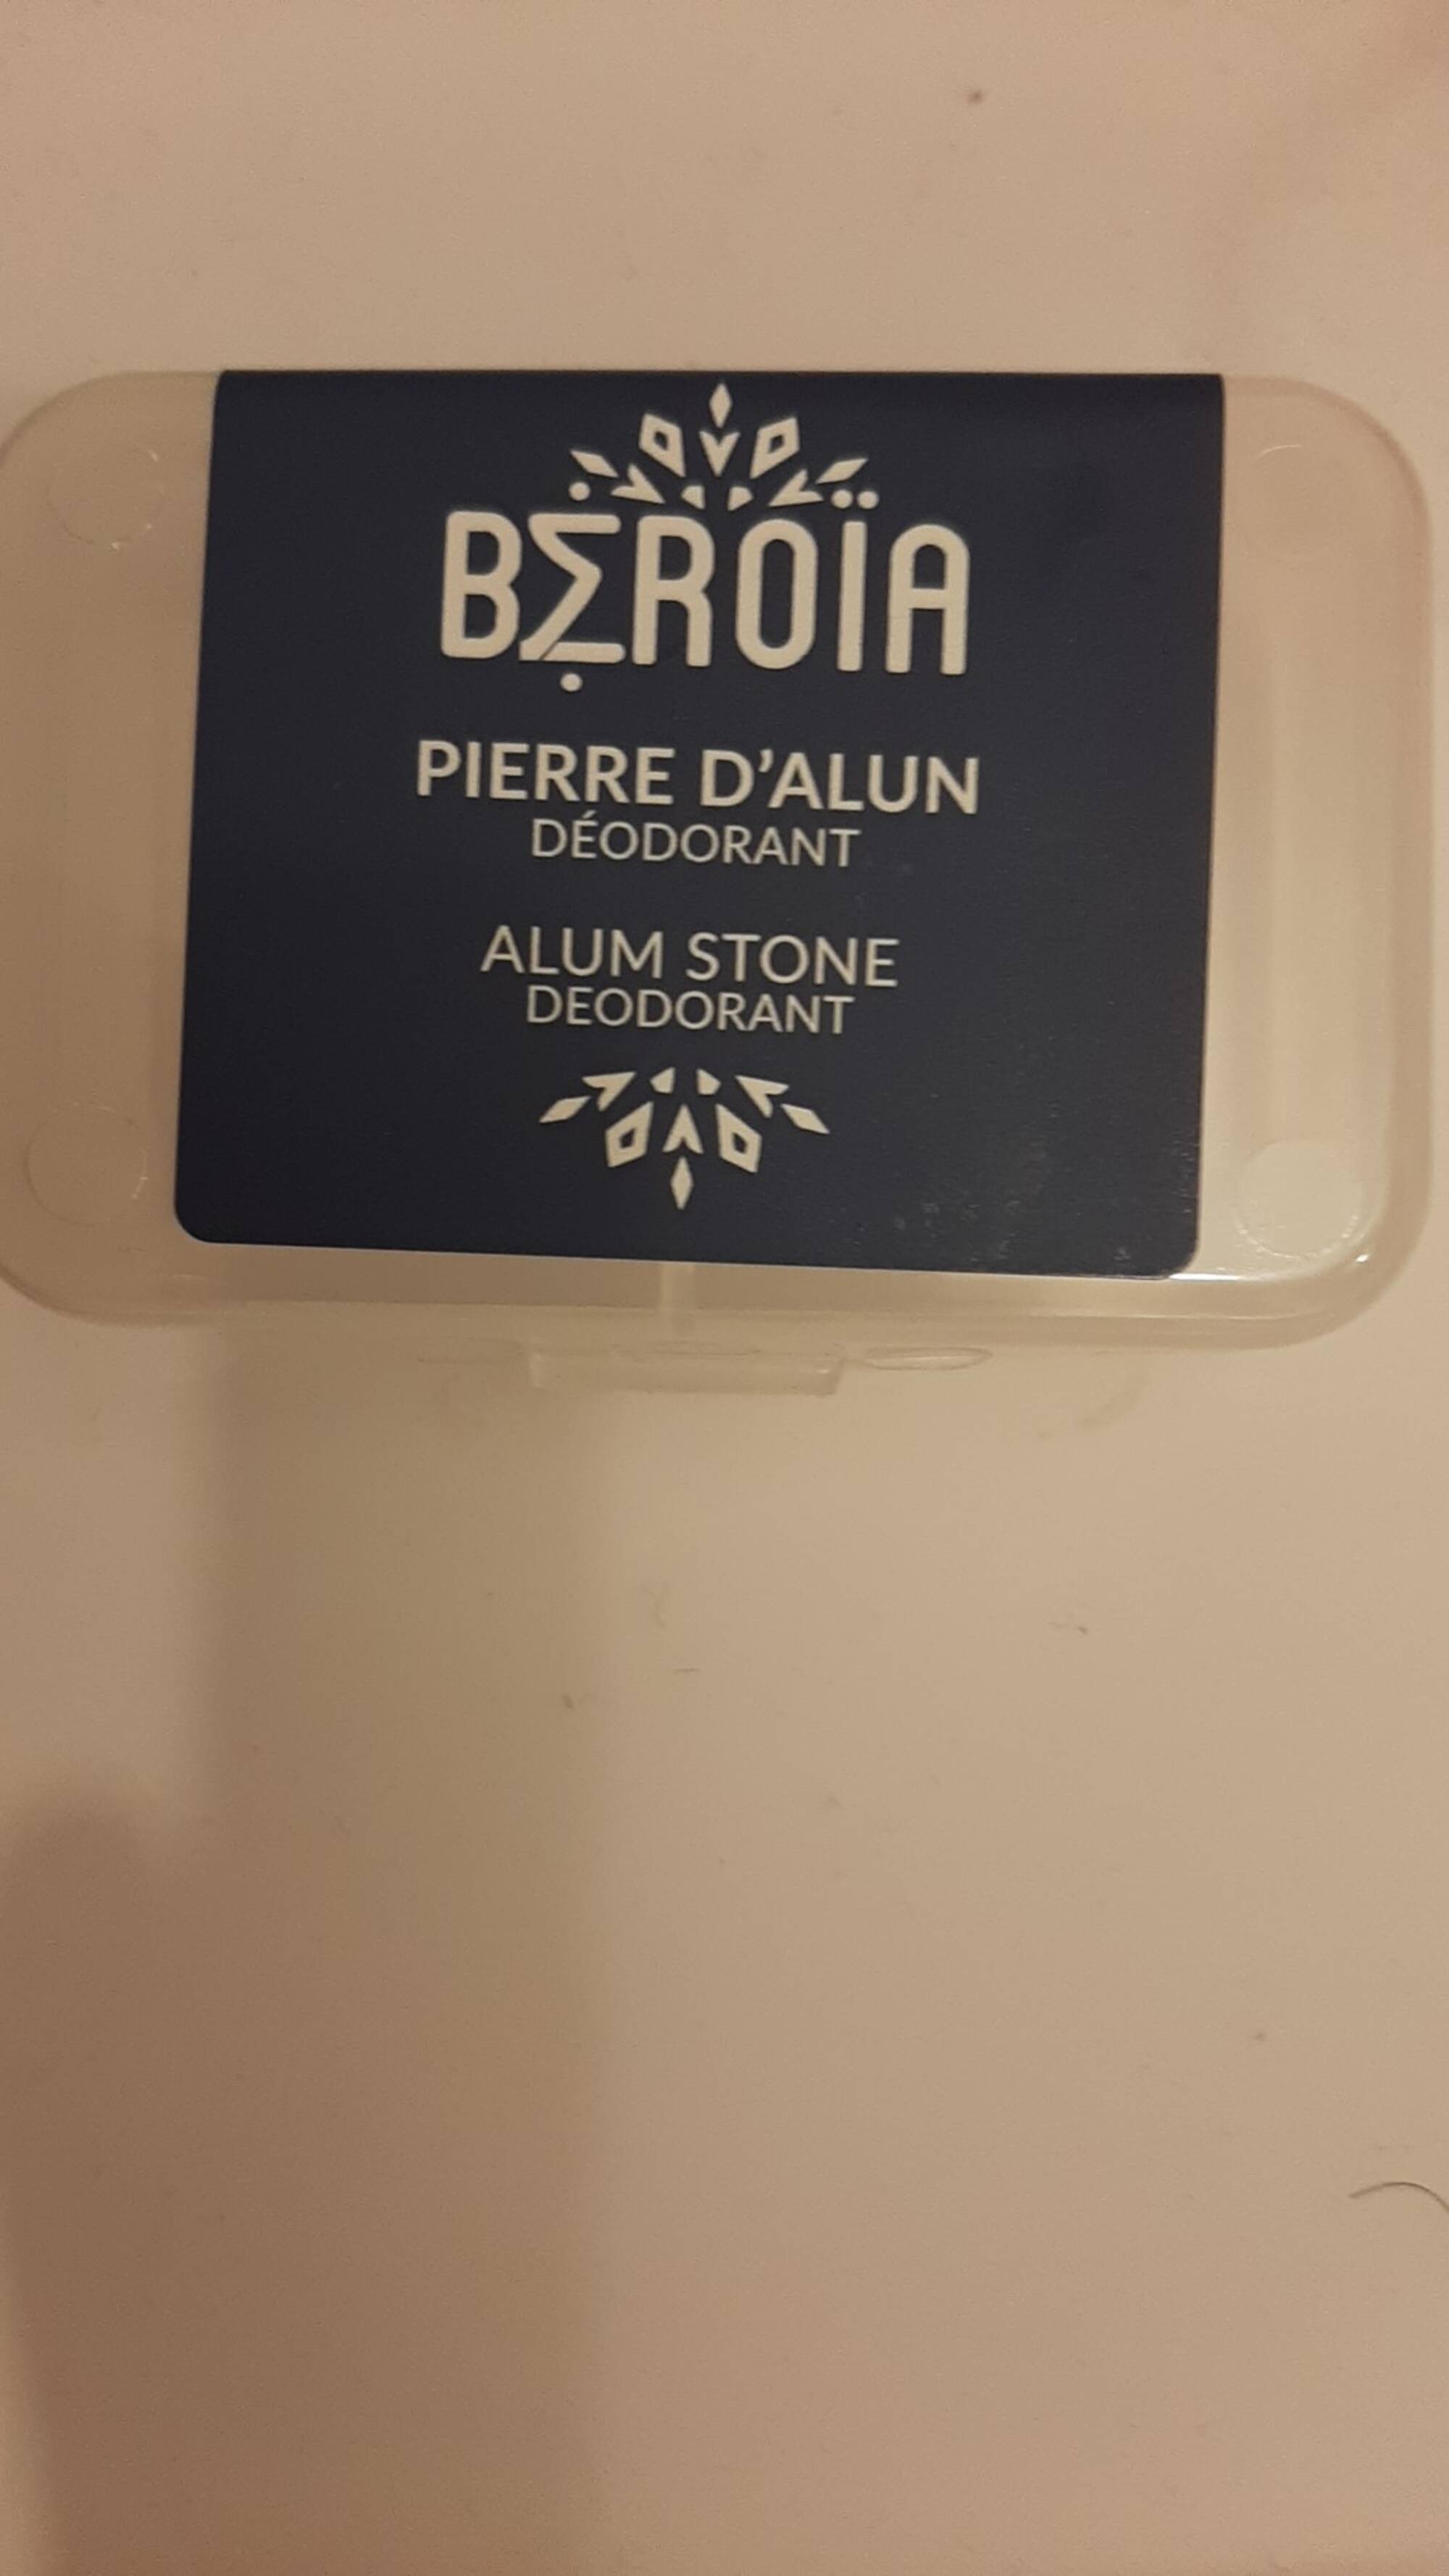 BEROIA - Pierre d'alun - Déodorant 